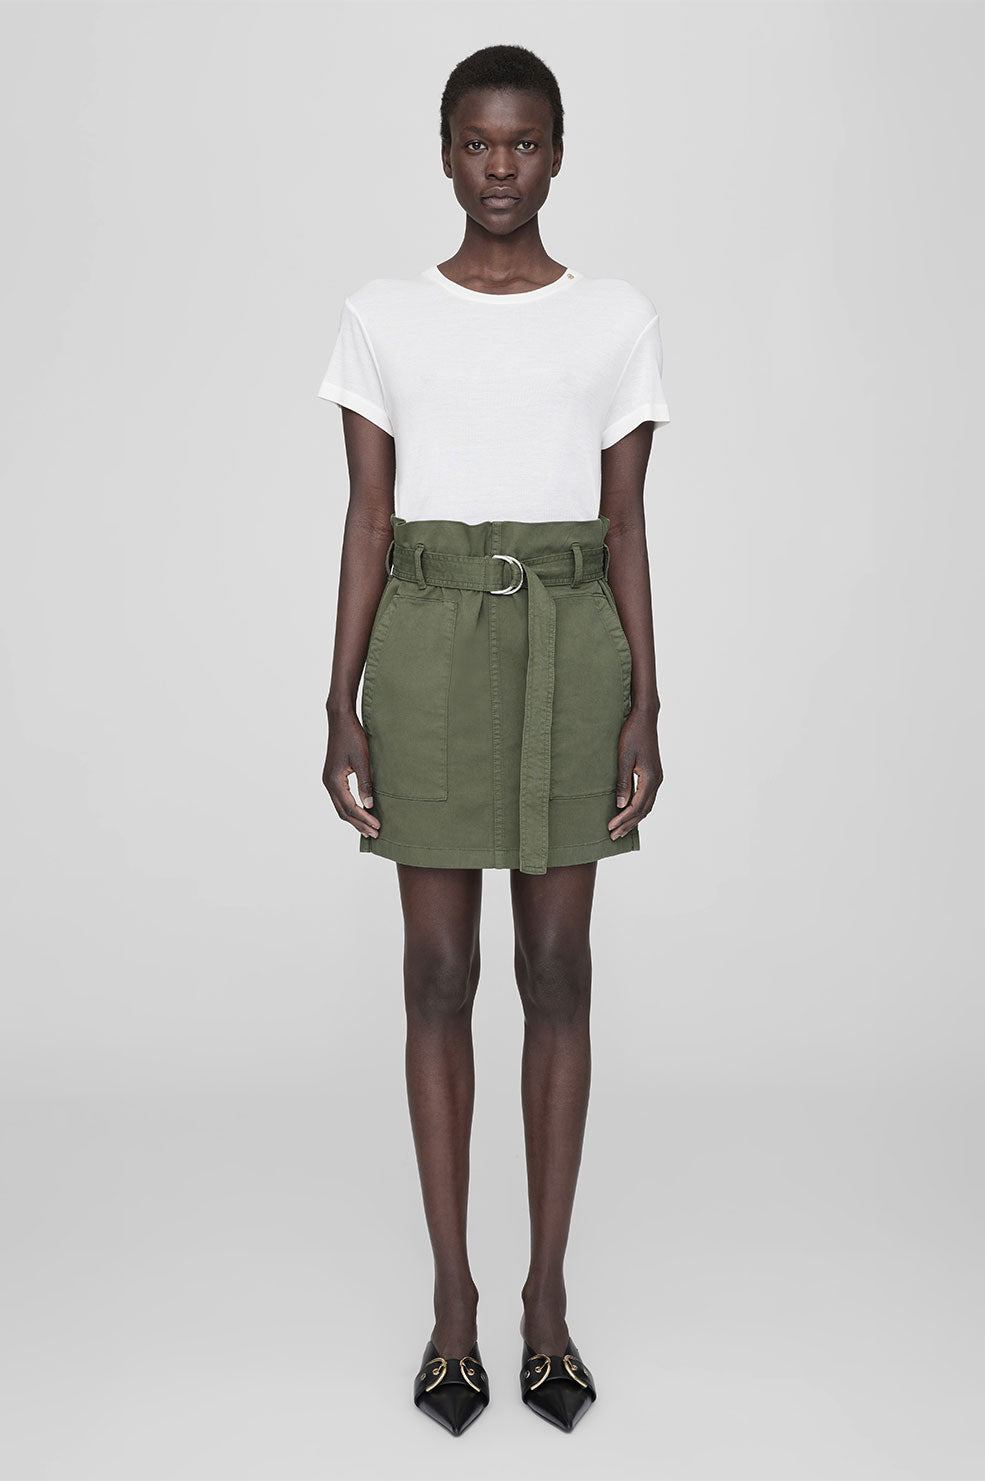 Aveline Skirt - Army Green